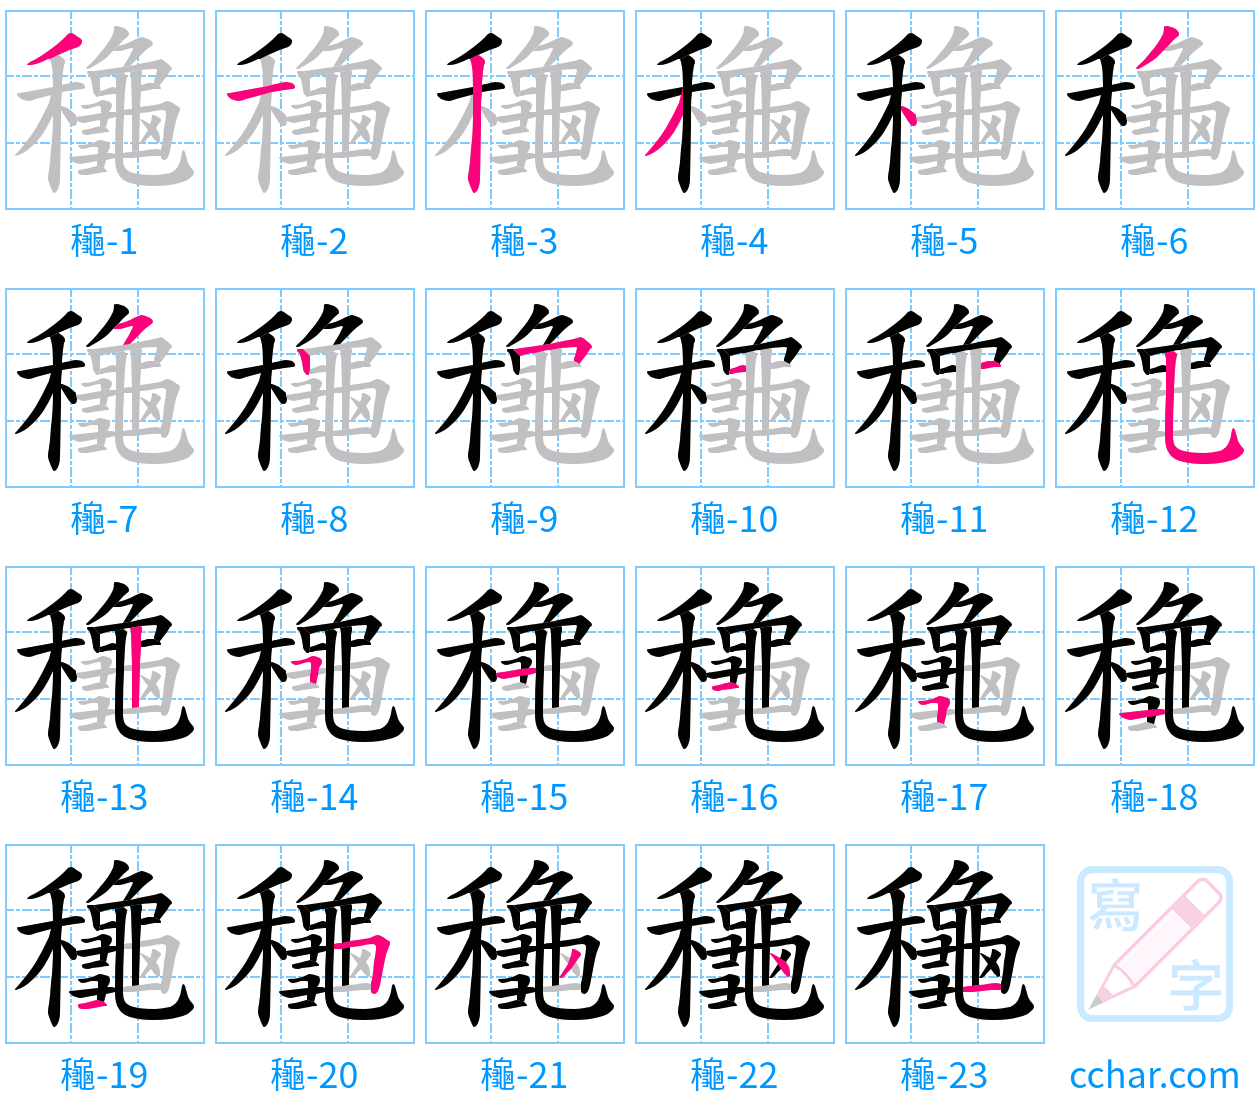 龝 stroke order step-by-step diagram